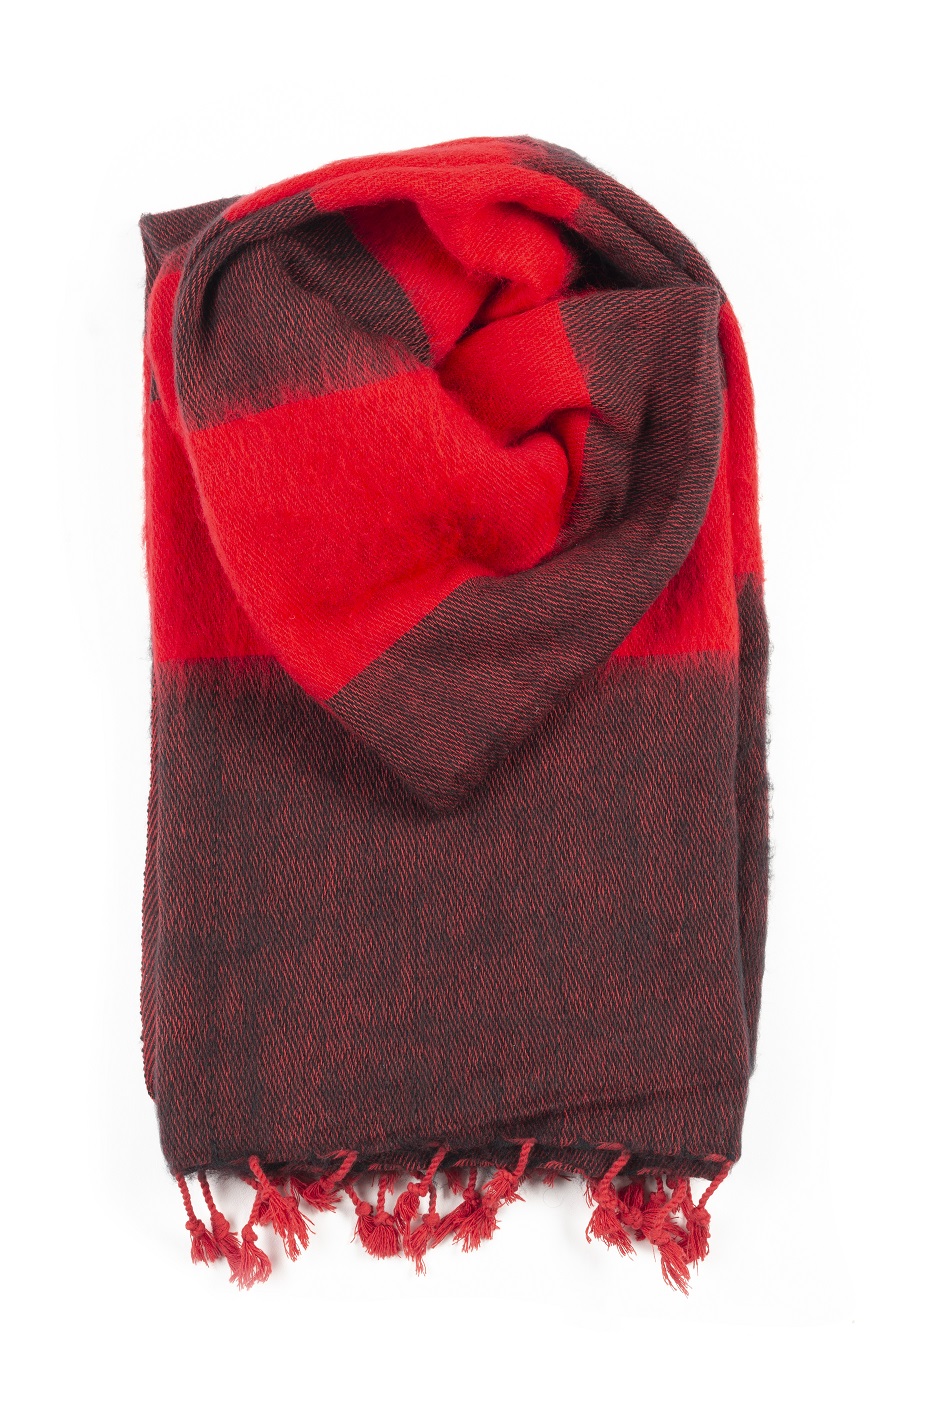 Regan volume scherm Omslagdoek sjaal rood gestreept. Omslagdoek online kopen - Shawls 4 You